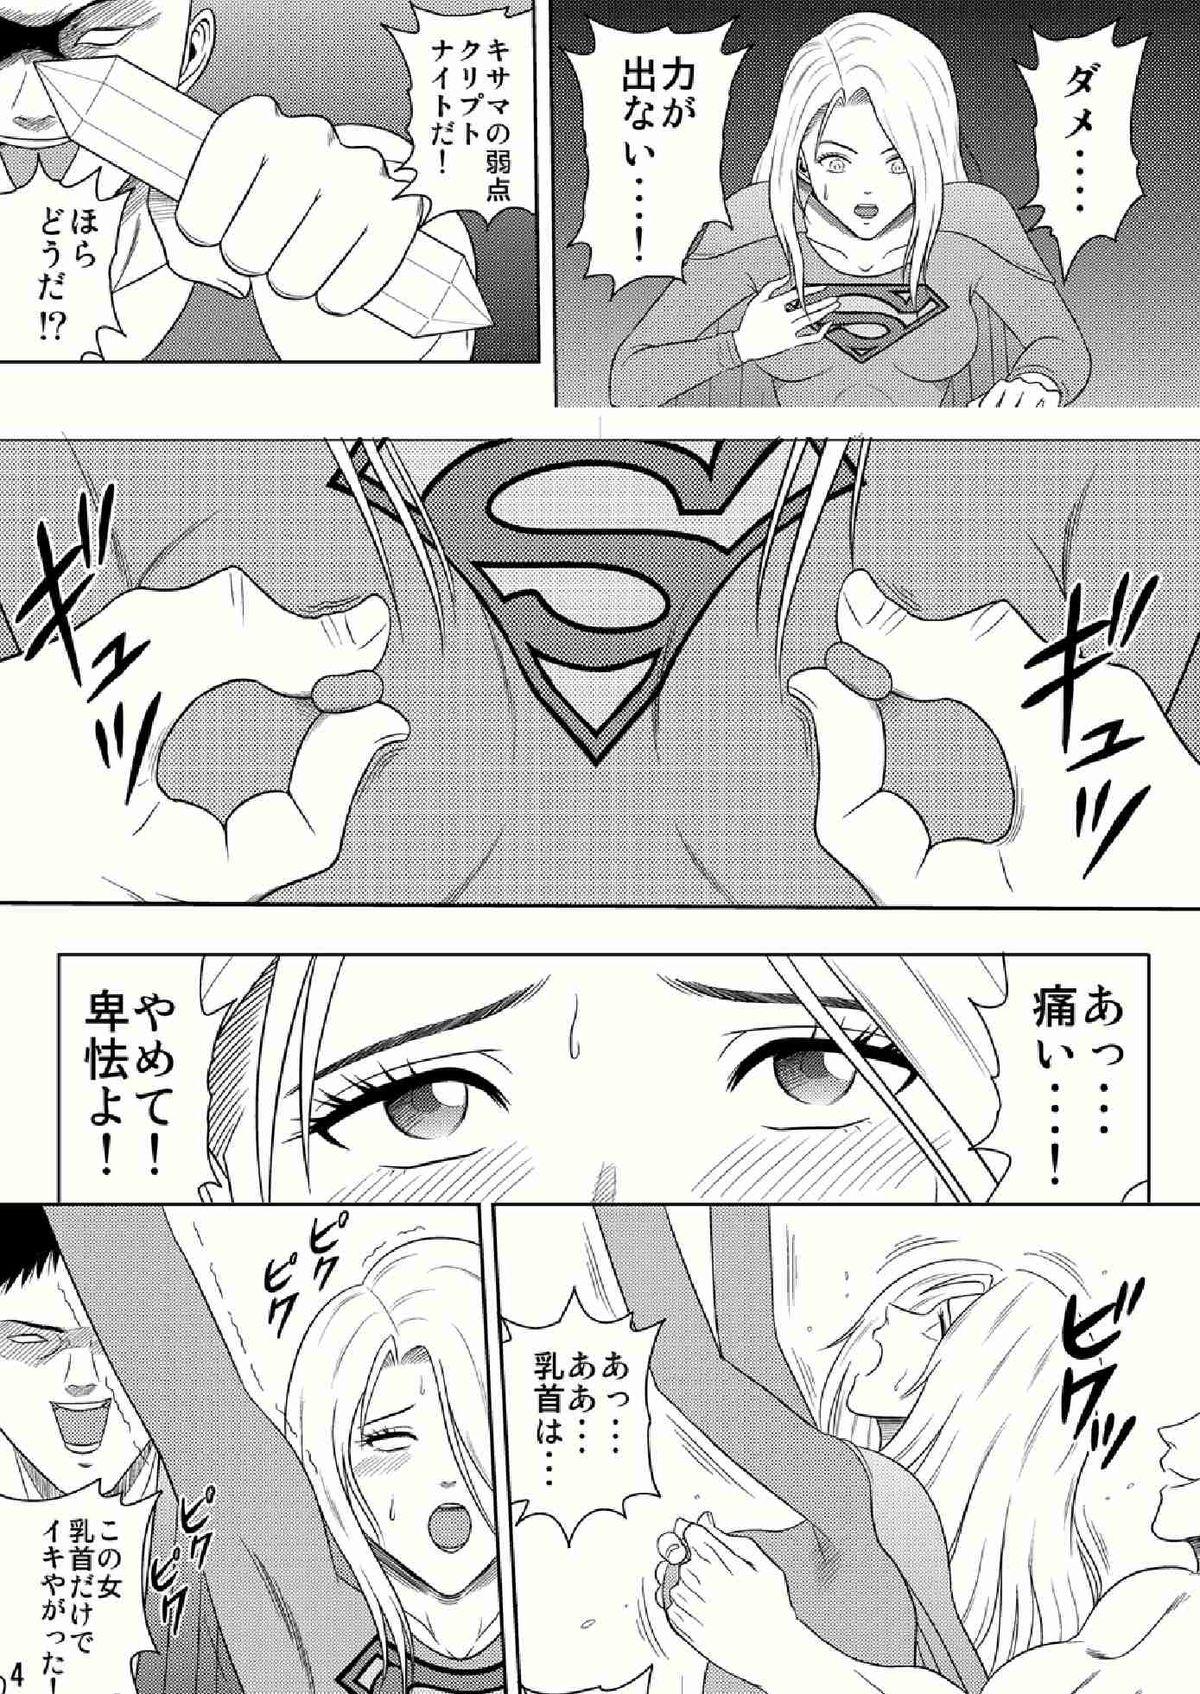 Toukikoubou vol.2 SUPER GIRL 3